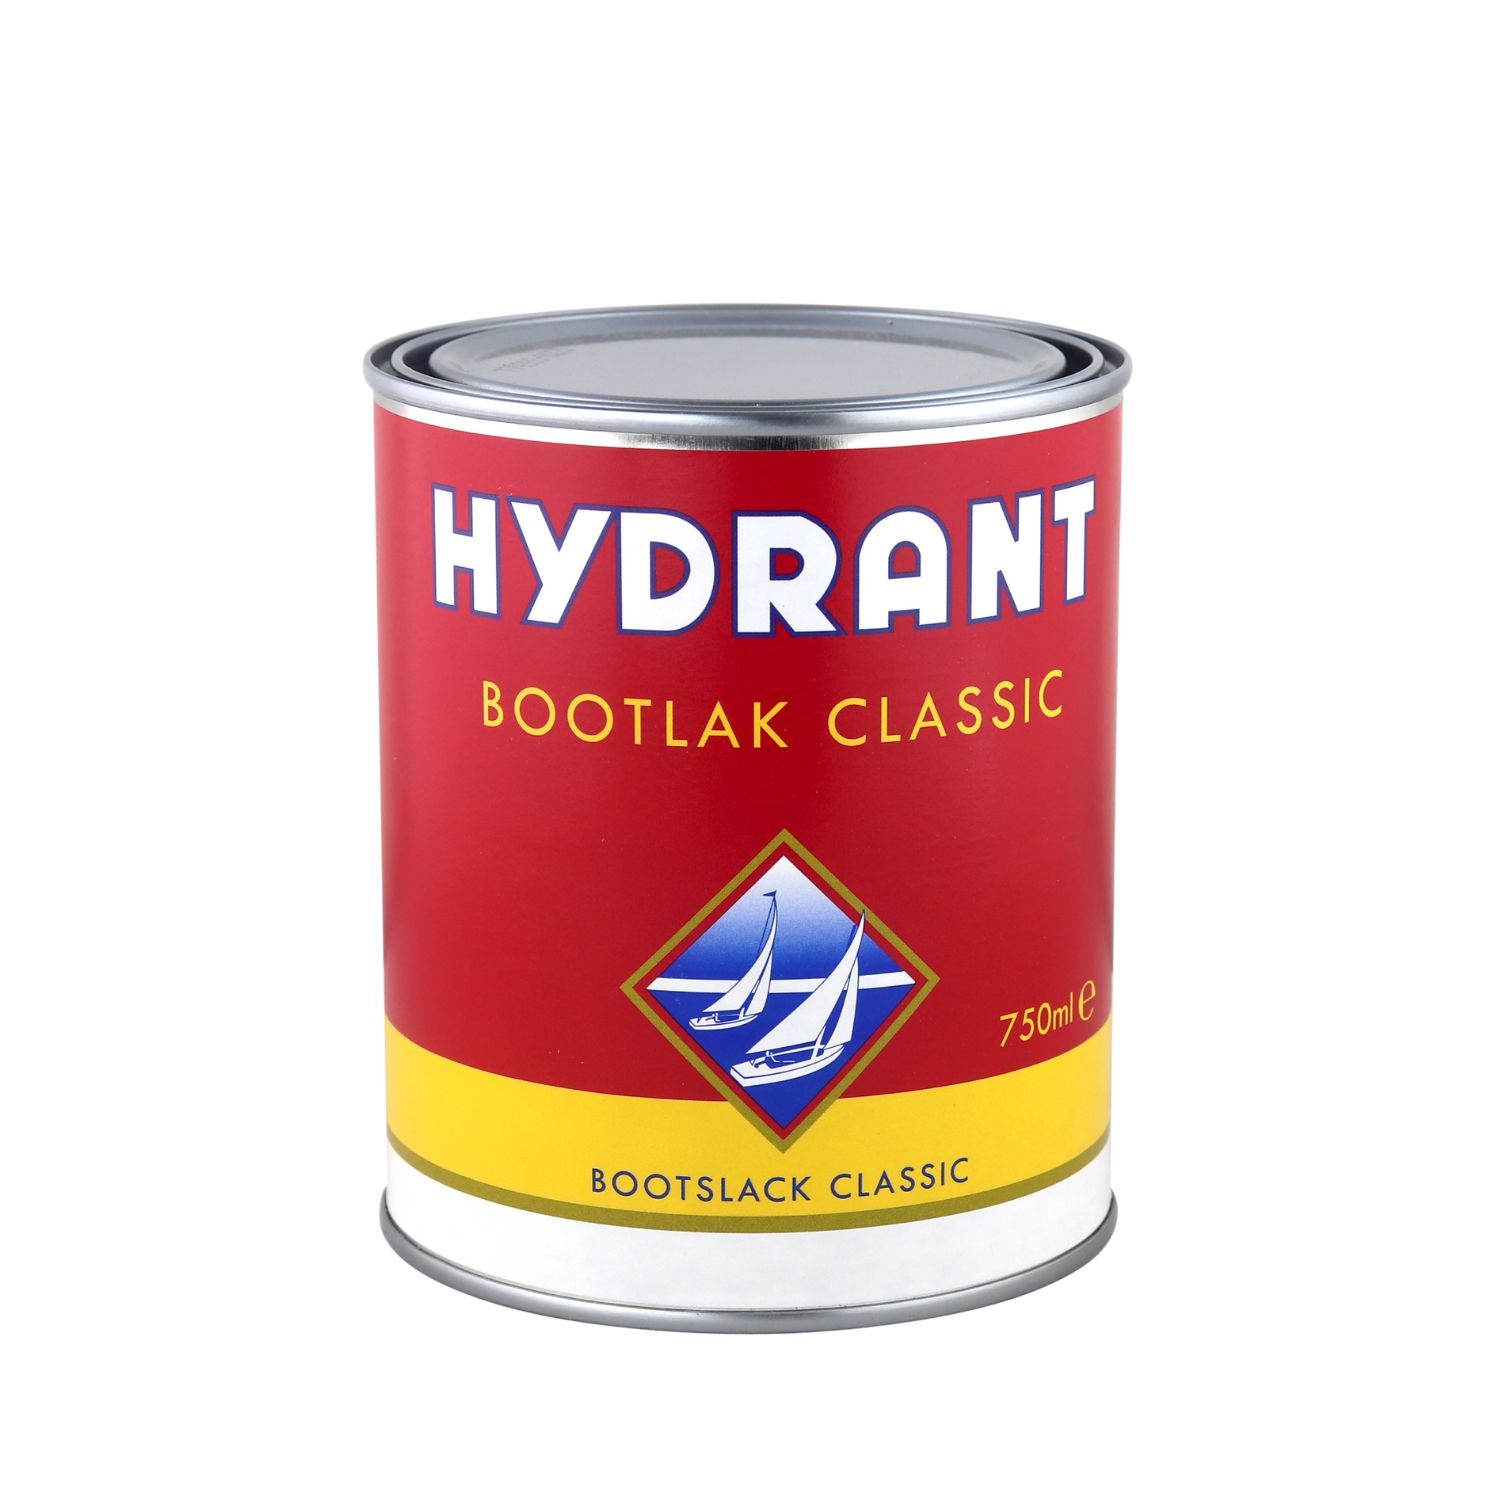 Absorberen Ingrijpen Behoren Hydrant Bootlak Classic | Blanke lakken